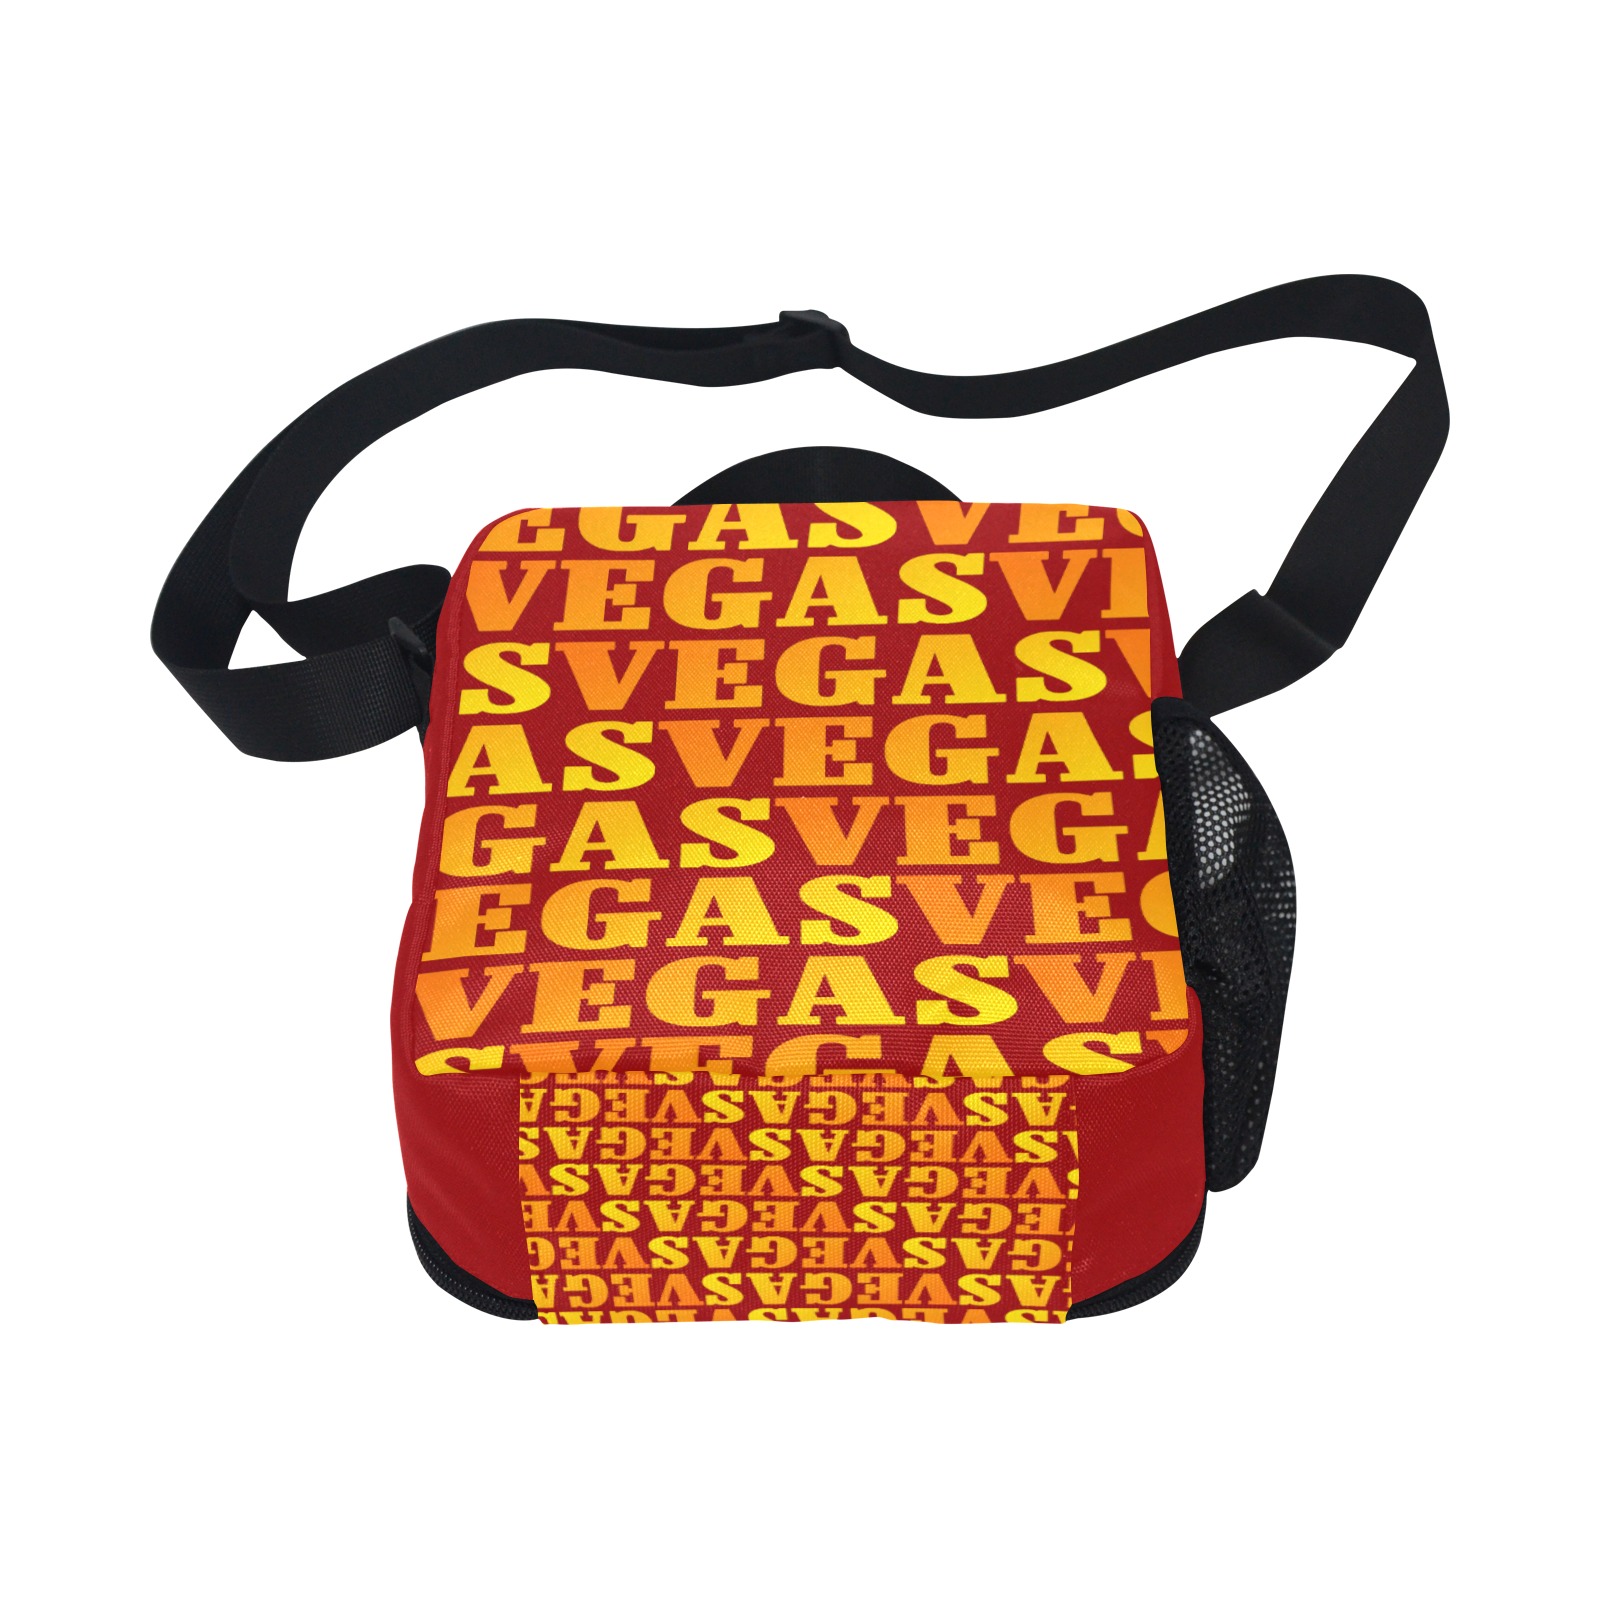 Golden Las VEGAS / Red All Over Print Crossbody Lunch Bag for Kids (Model 1722)